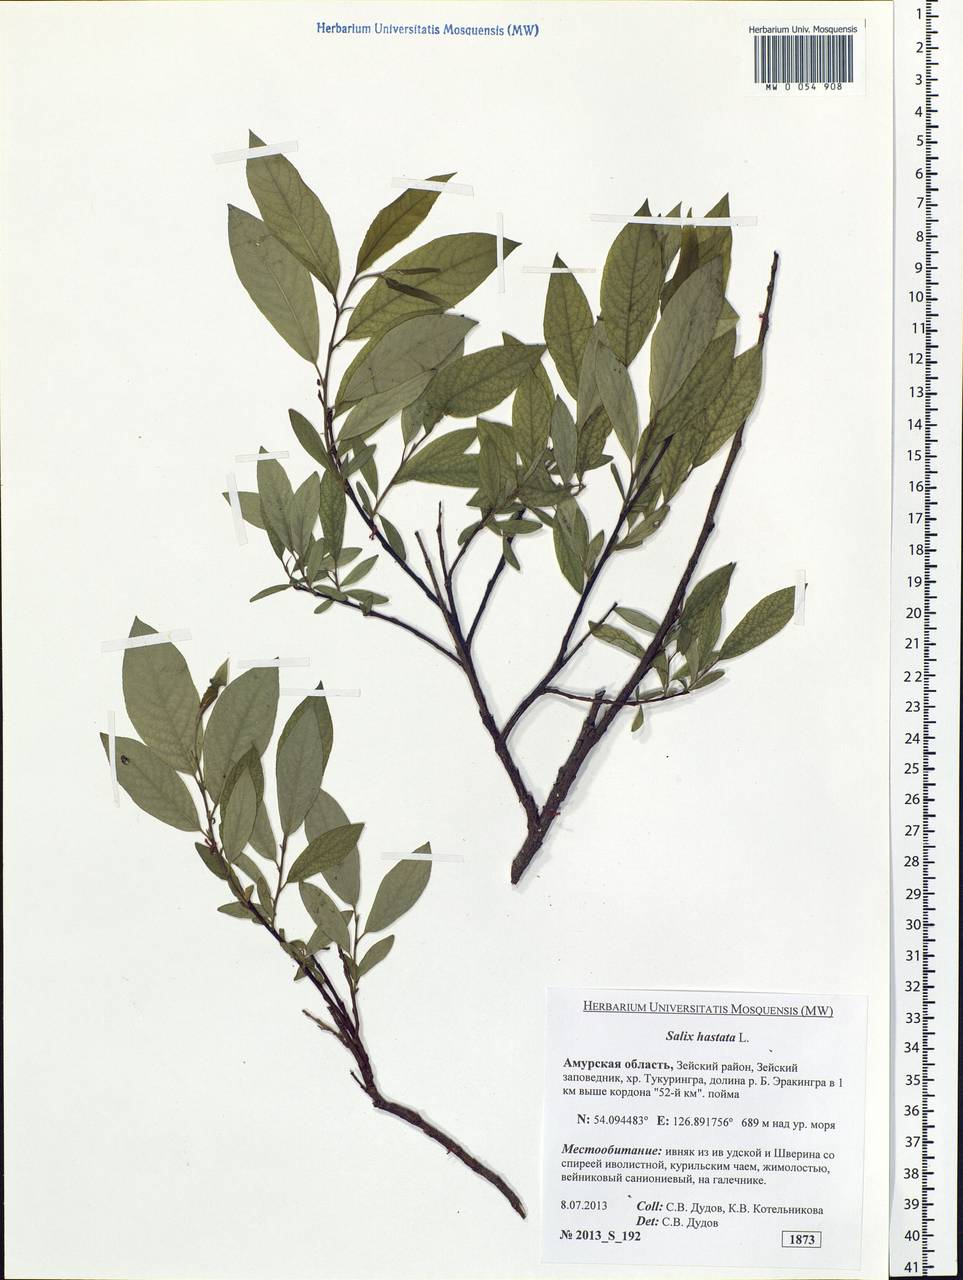 Salix hastata L., Siberia, Russian Far East (S6) (Russia)